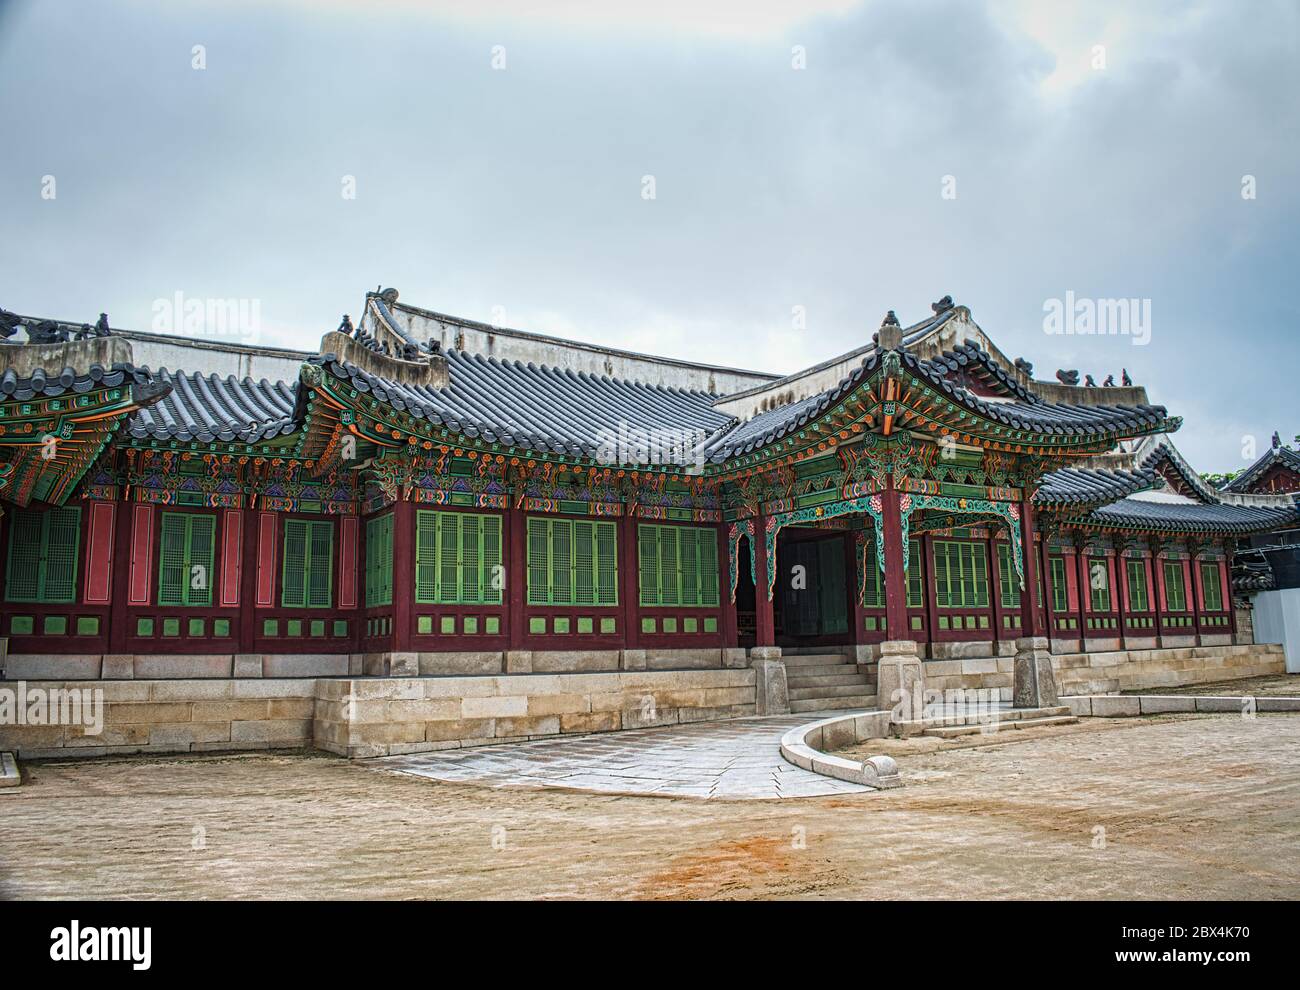 Huijeongdang Hall at Changdeokgung Palace in Seoul Stock Photo